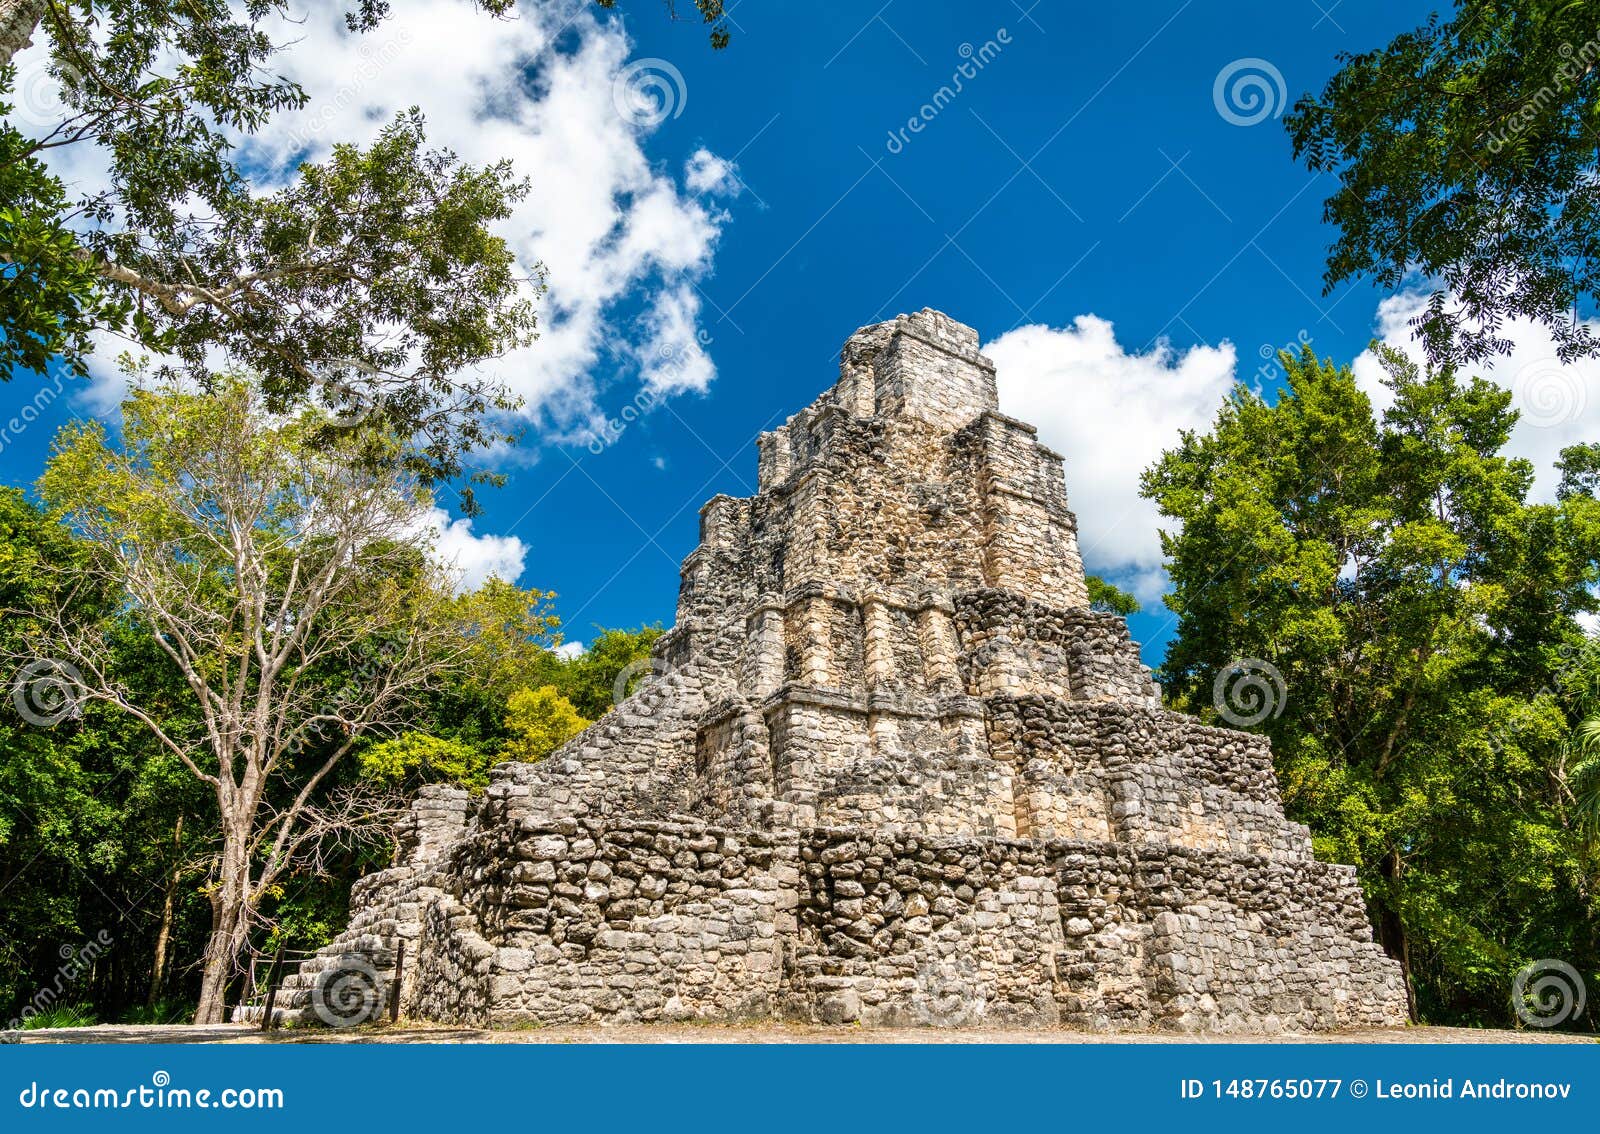 ancient mayan pyramid at muyil in quintana roo, mexico